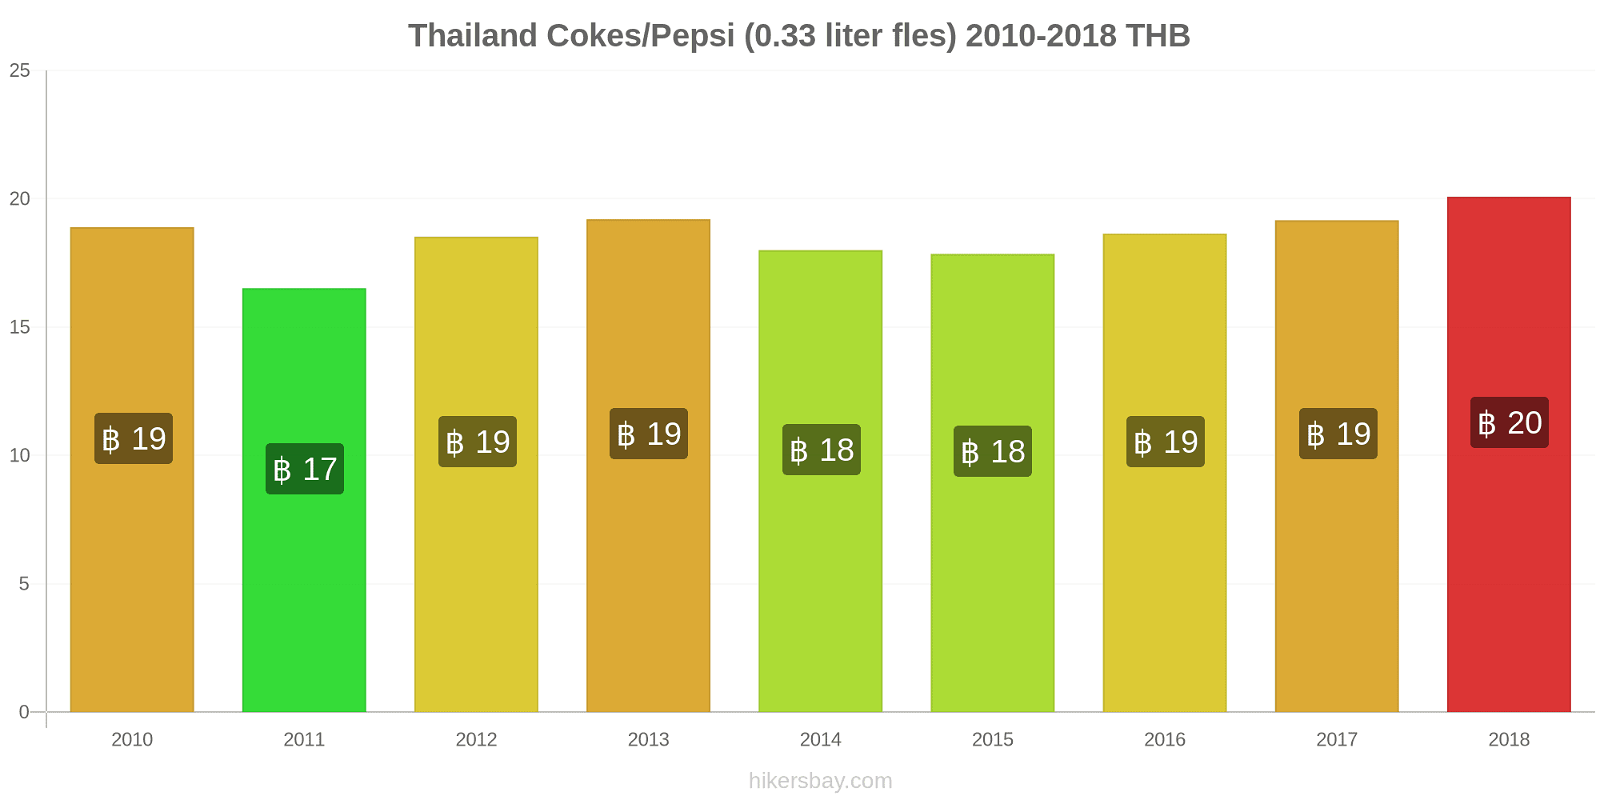 Thailand prijswijzigingen Cokes/Pepsi (0,33 literfles) hikersbay.com